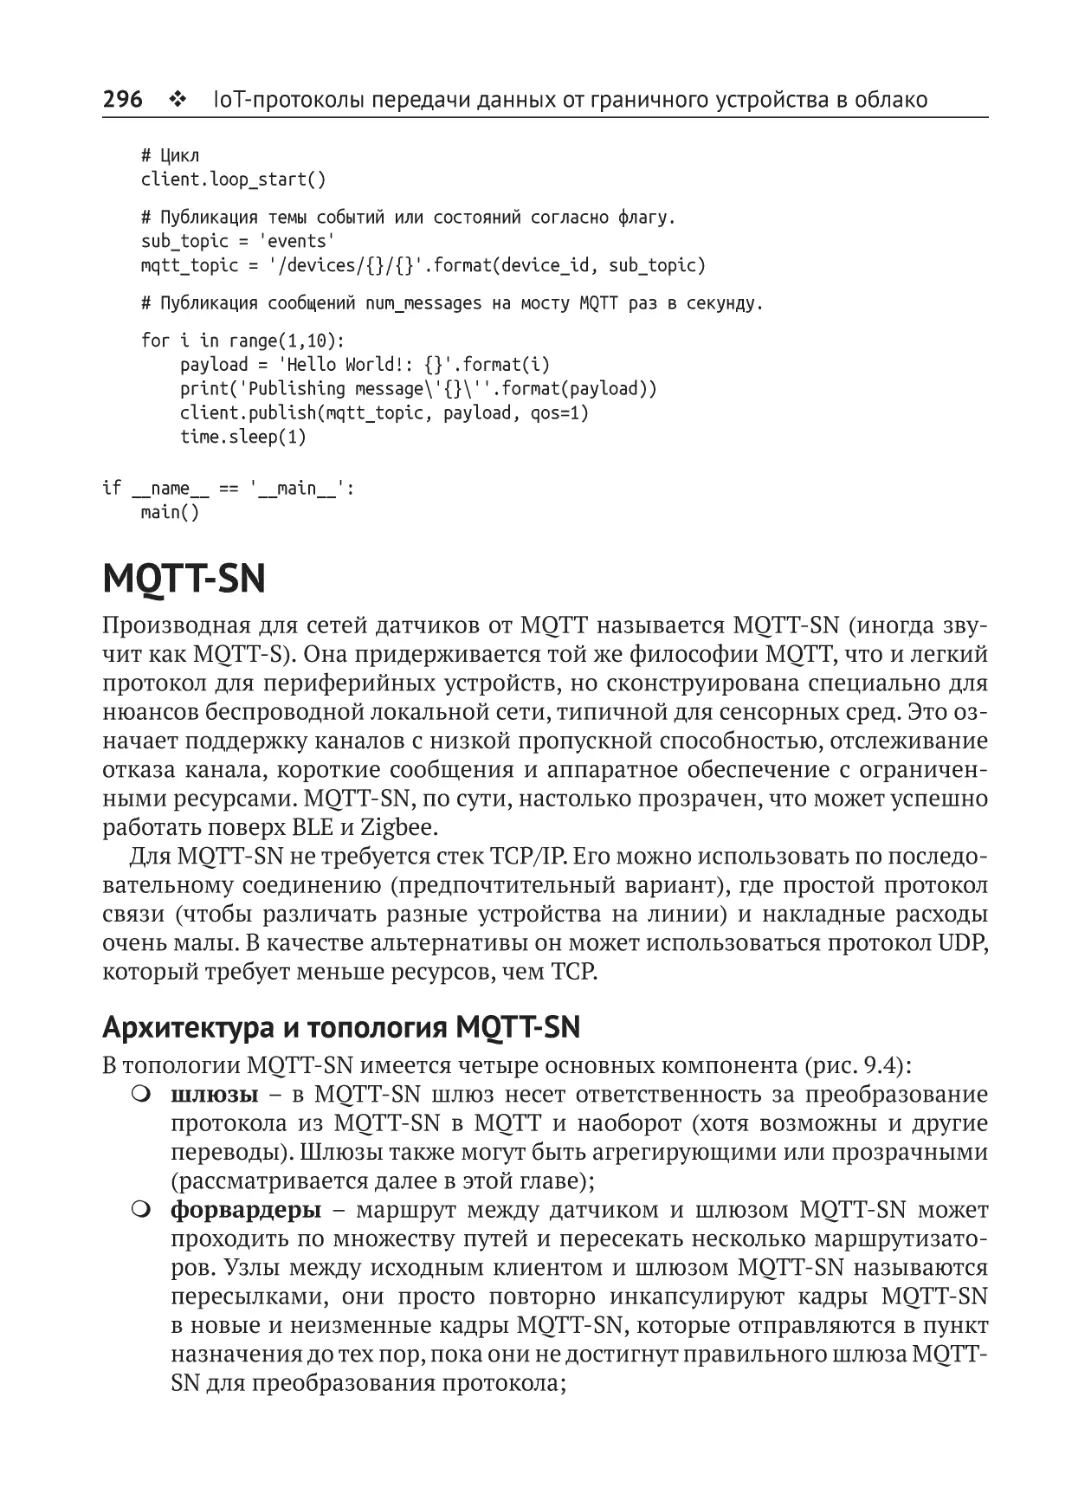 MQTT-SN
Архитектура и топология MQTT-SN